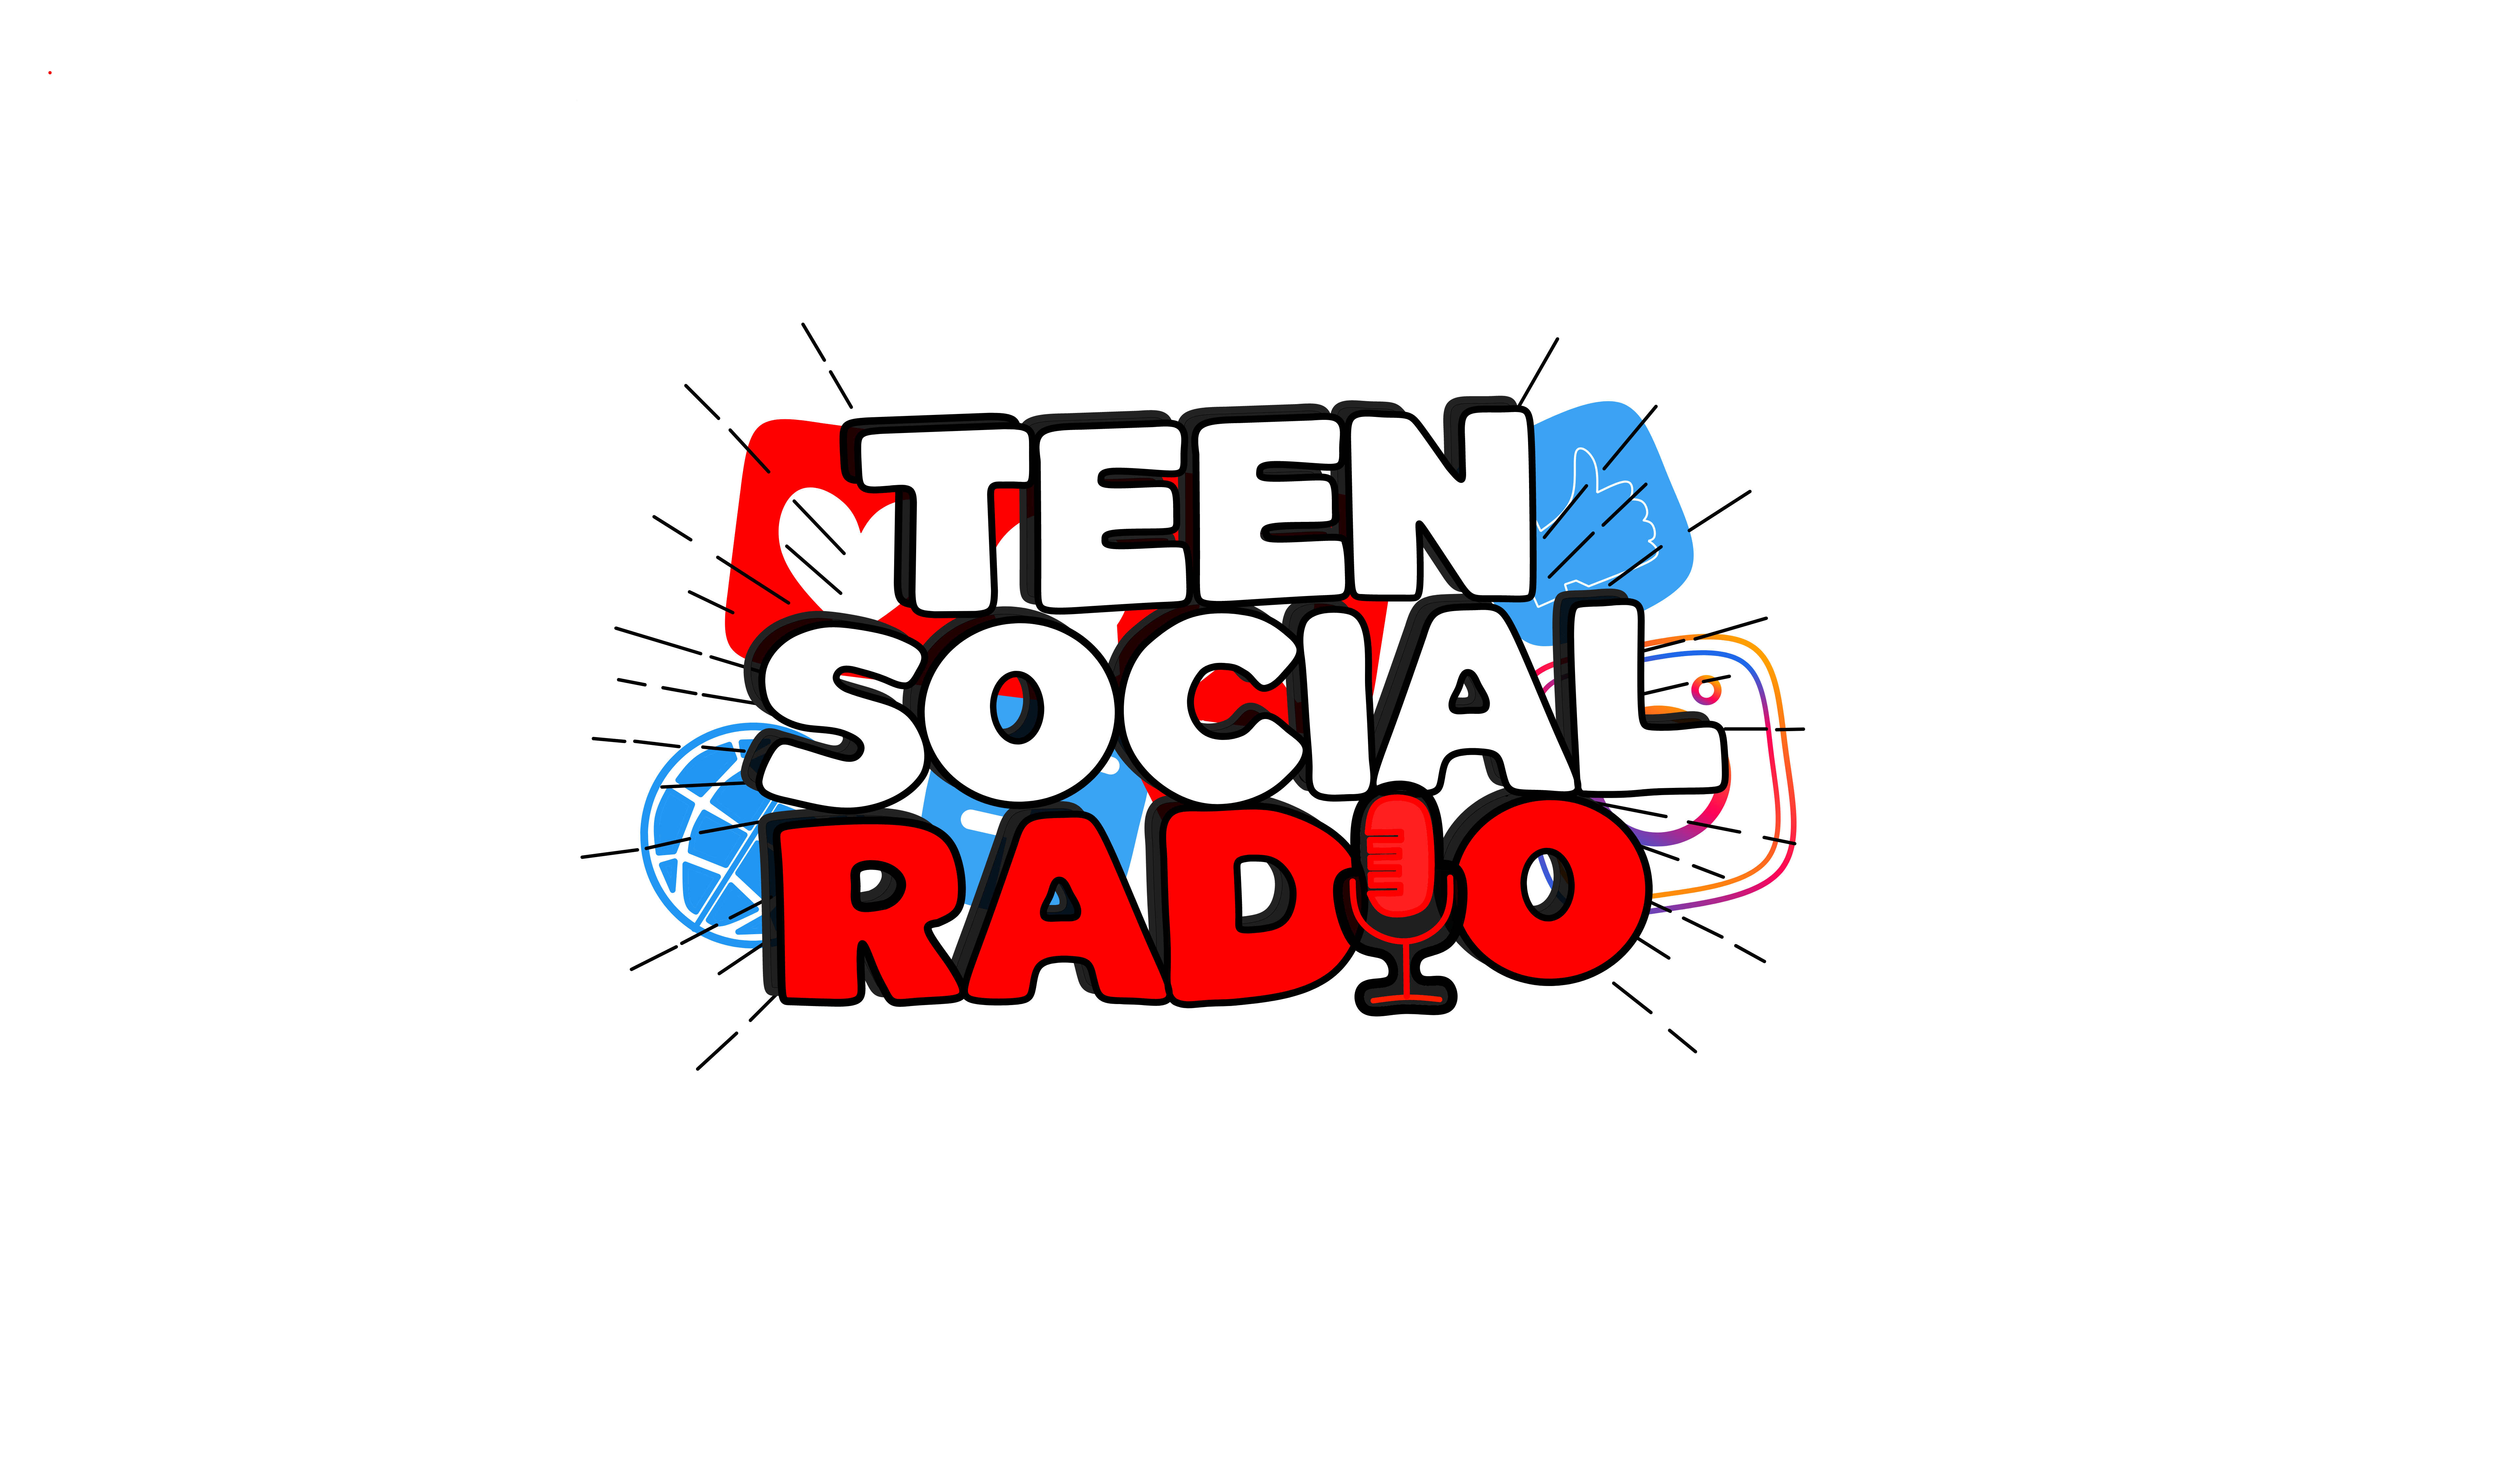 TEEN Social Radio